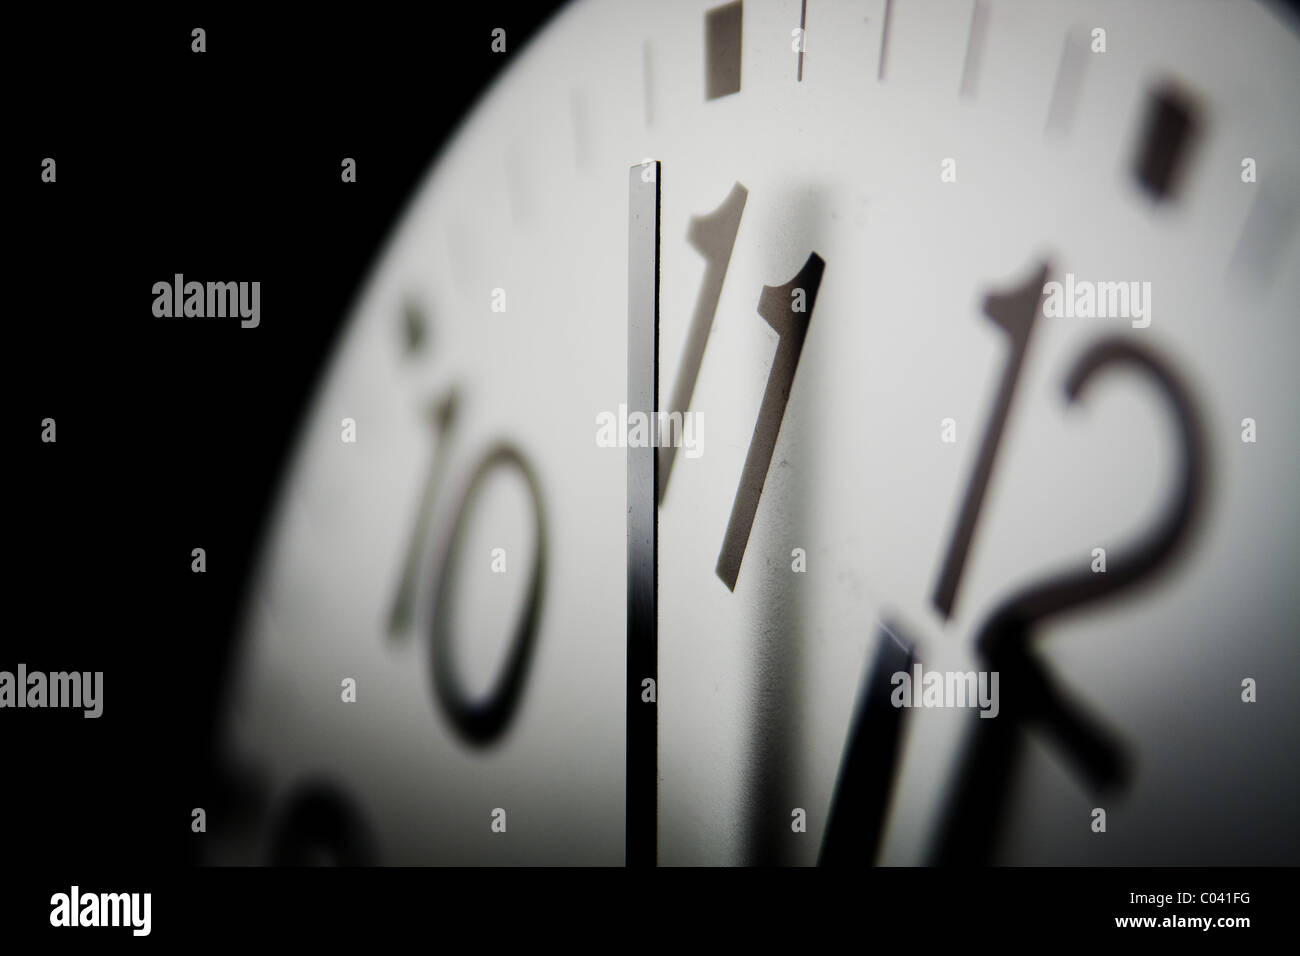 2010 Doomsday Clock ; six minutes jusqu'à minuit sur une horloge symbolique d'avertissement comment fermer le monde est à un désastre mondial. Banque D'Images